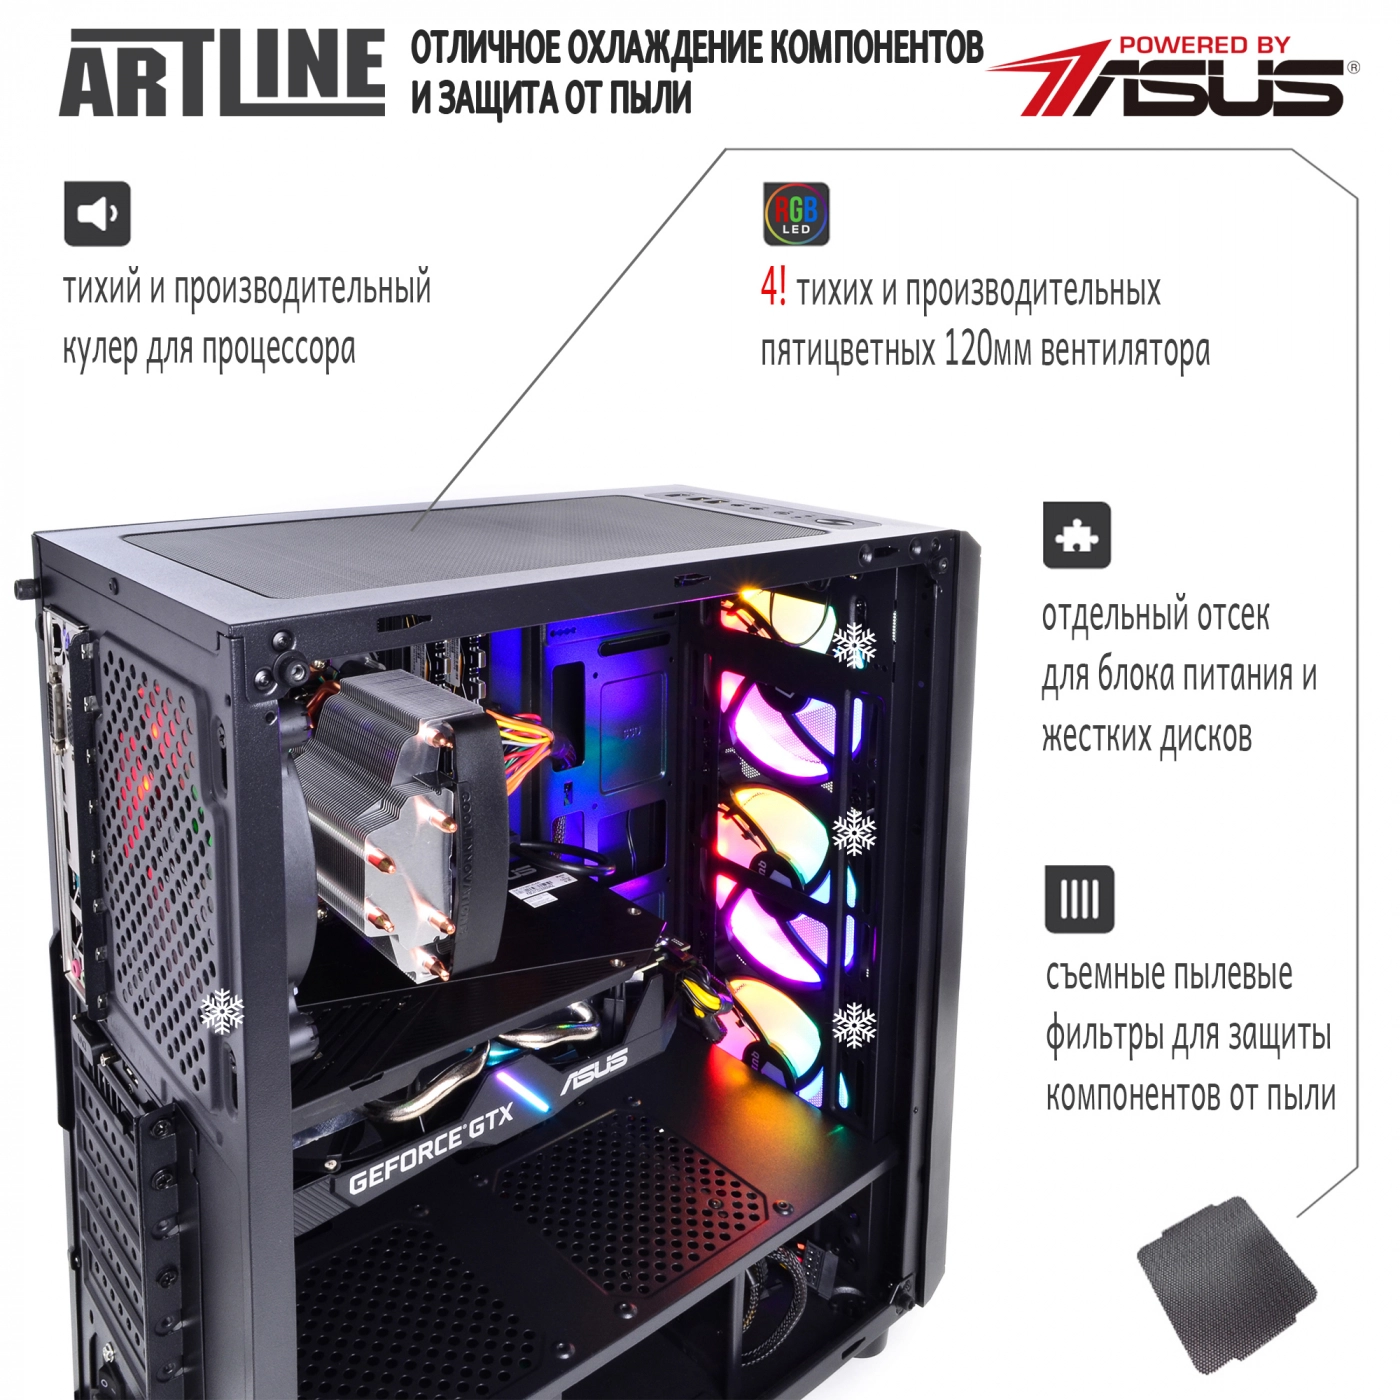 Купить Компьютер ARTLINE Gaming X53v15 - фото 3